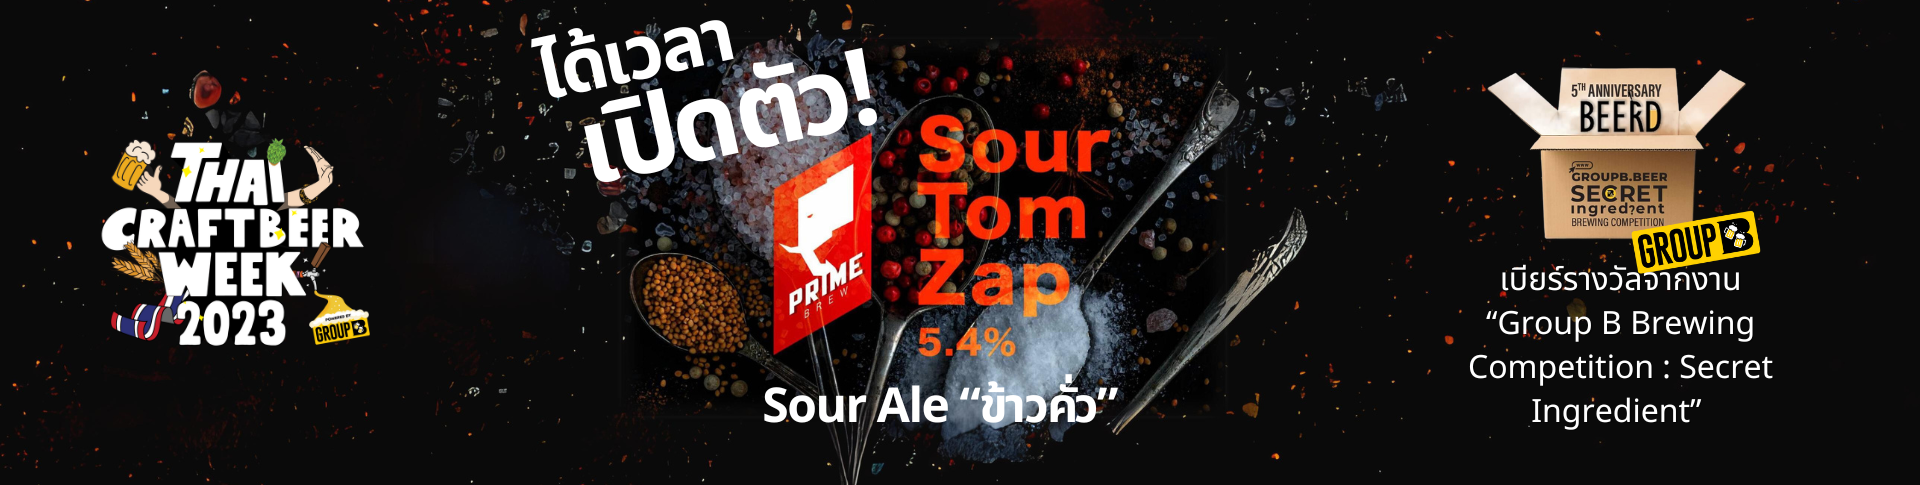 เปิดตัวเบียร์ “SourTom Zap”Sour Ale ข้าวคั่ว @Chitbeer